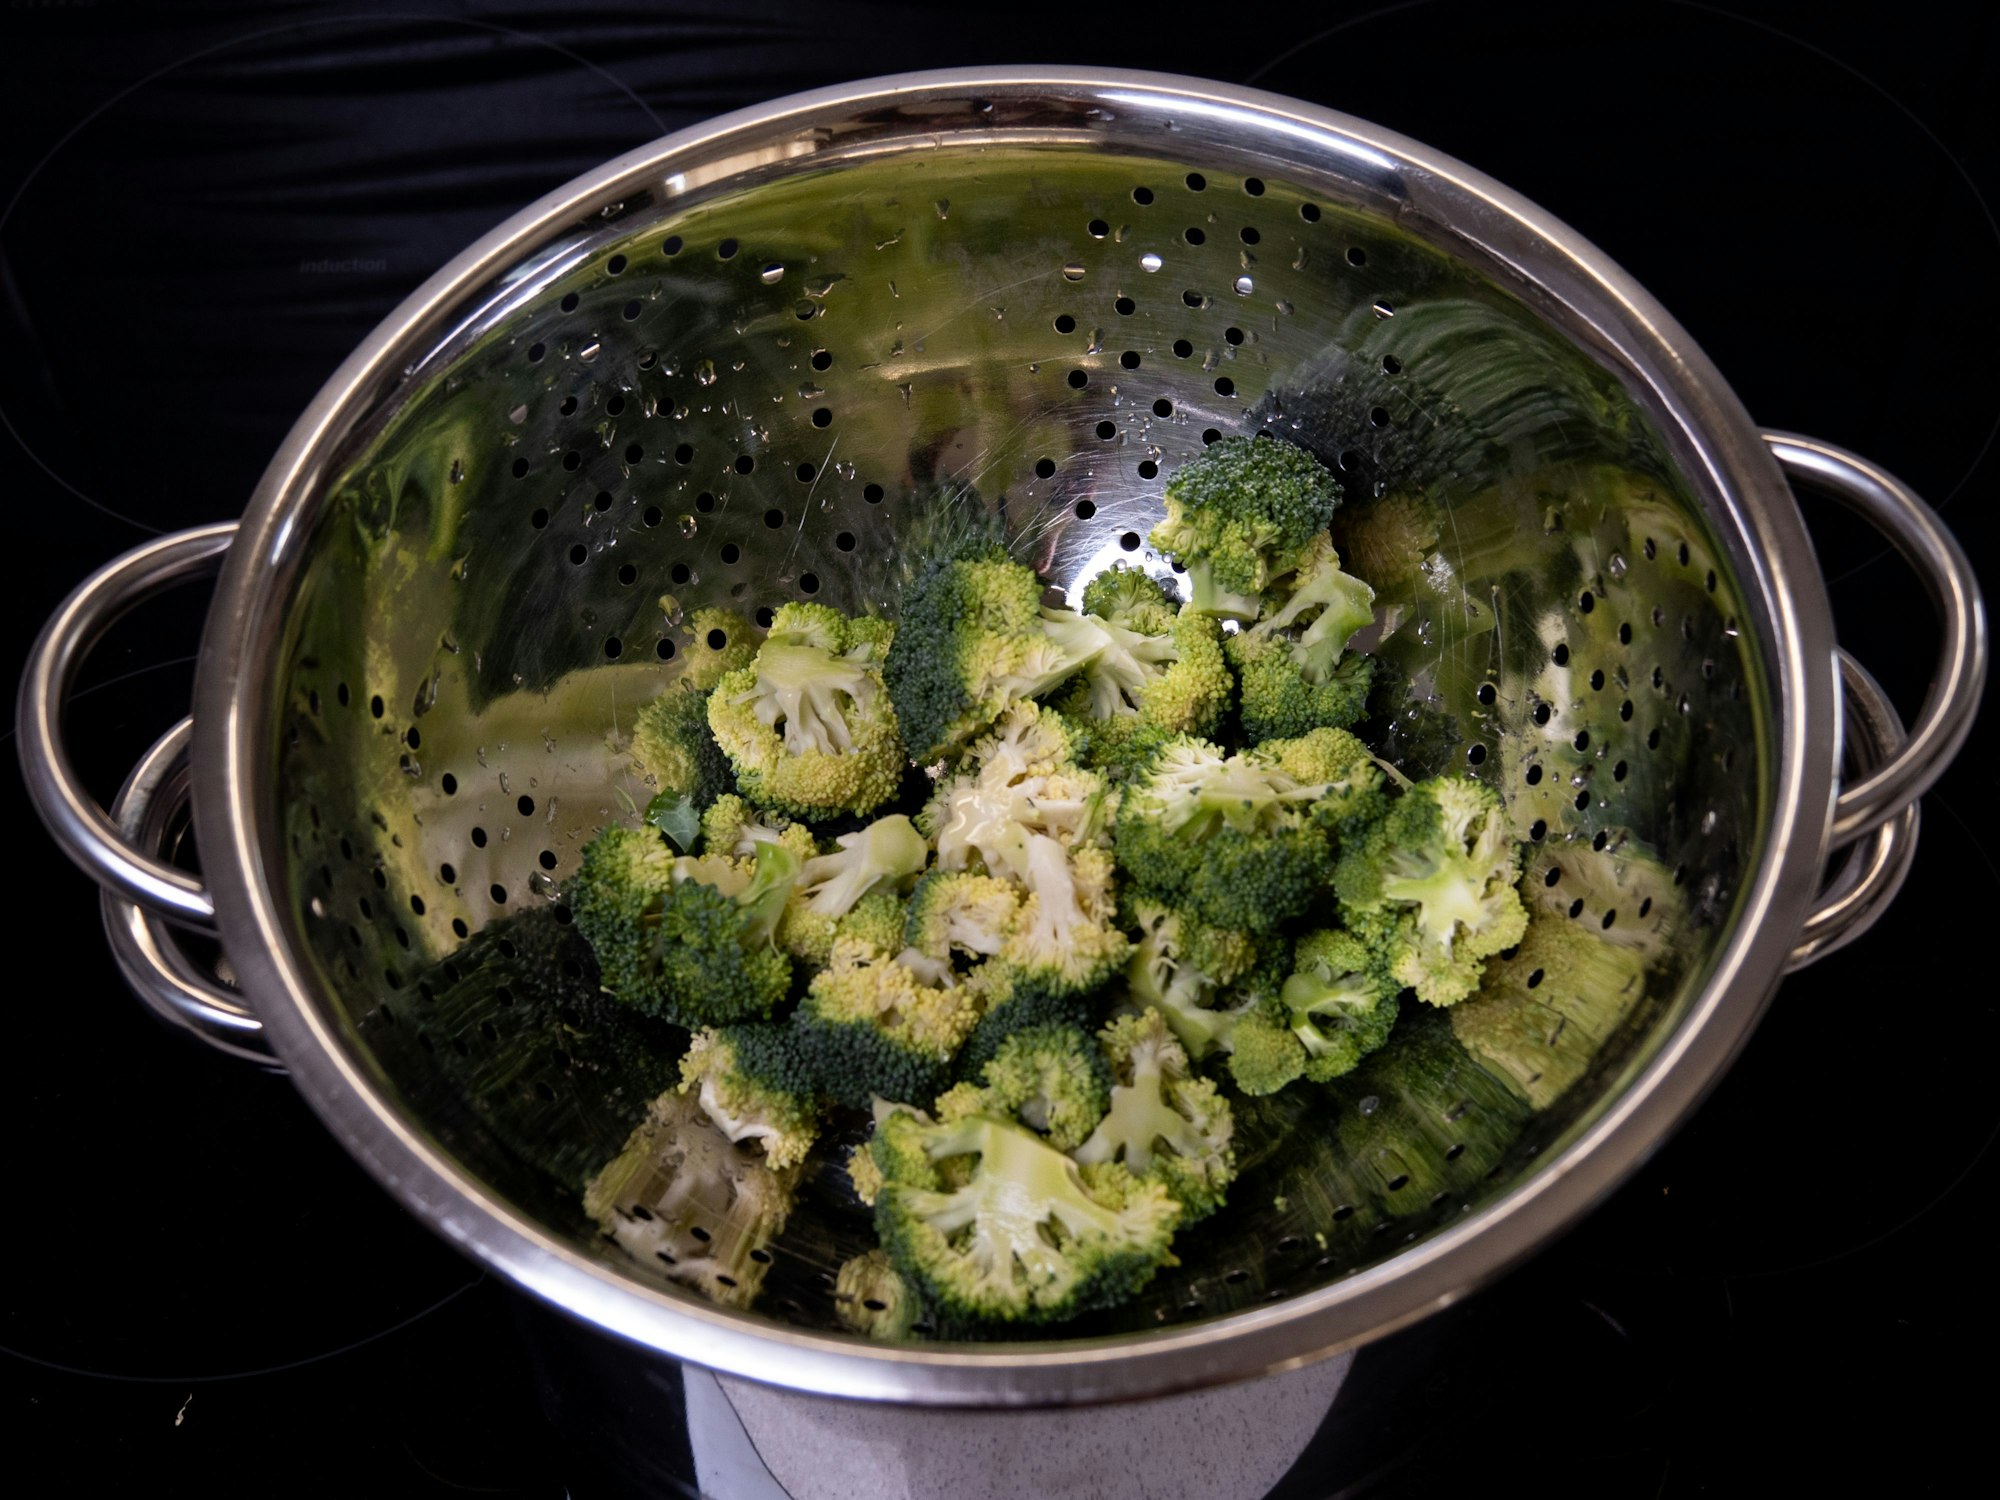 Fehler beim Kochen: Broccoli liegt in einem Kochtopf. Man sieht es Essen nicht an, doch unzureichende Hygiene kann Krankheitserreger beim Kochen übertragen.